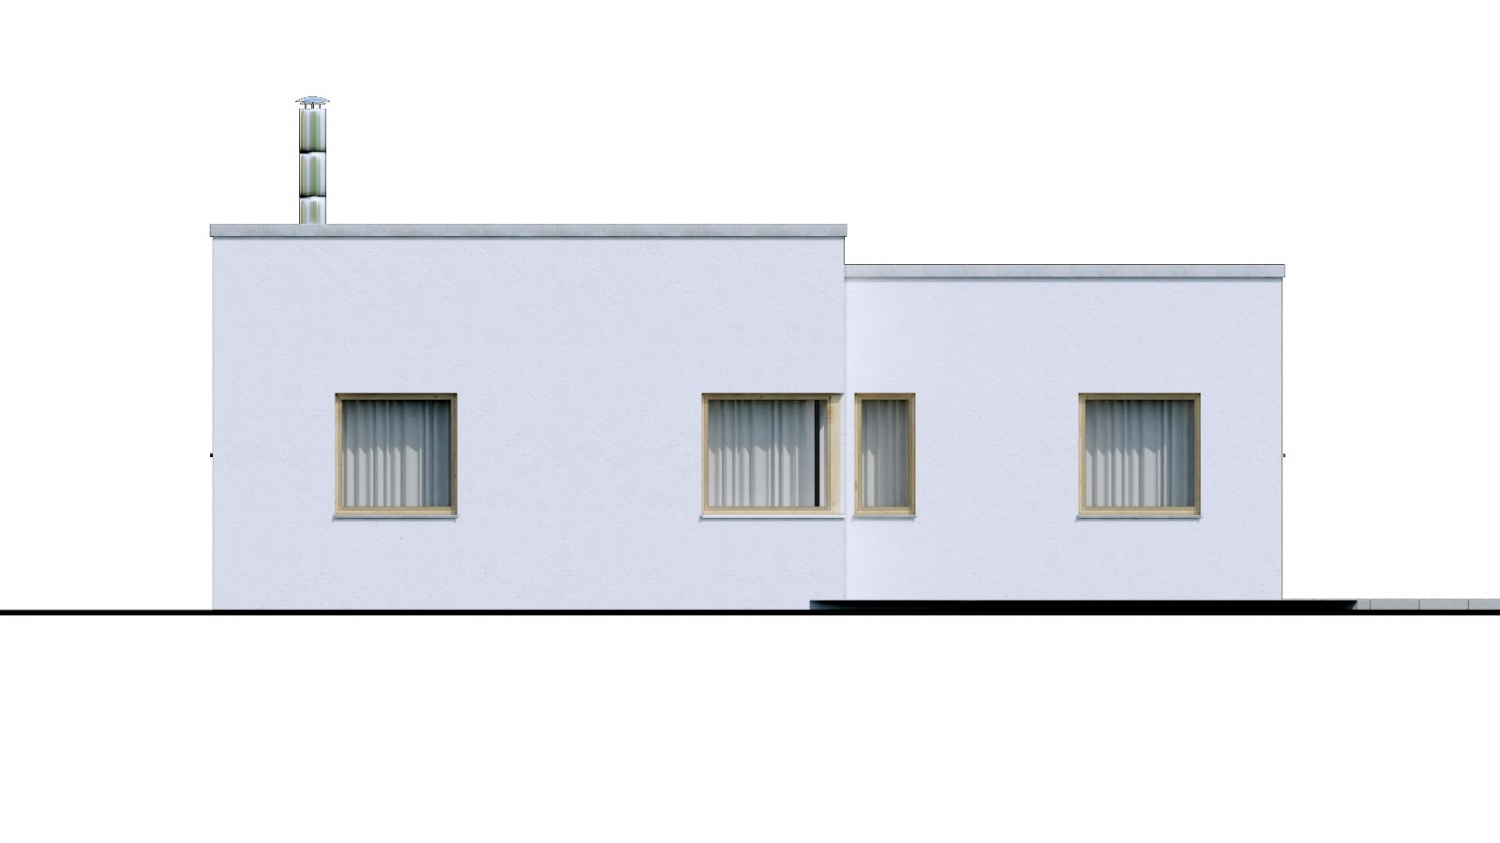 Zrkadlový pohľad 3. - 4-pokojový dům ve tvaru L s plochou střechou. Kuchyň s obývákem tvoří velkoprostor.